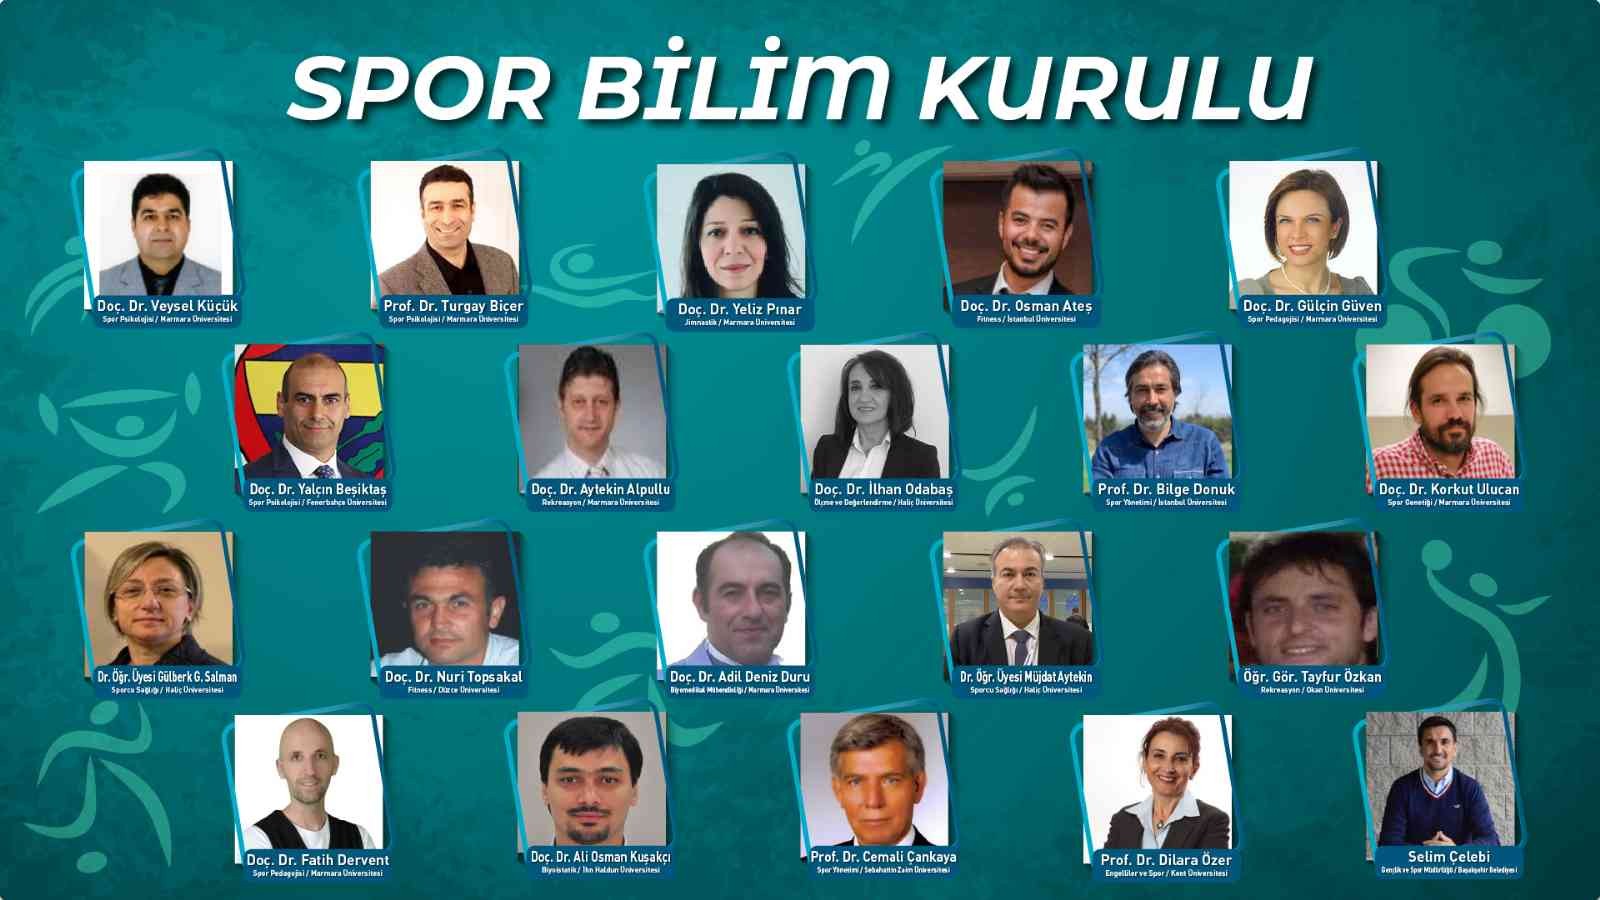 Başakşehir’de spor bilim kurulu ile SARGEM kuruldu #istanbul